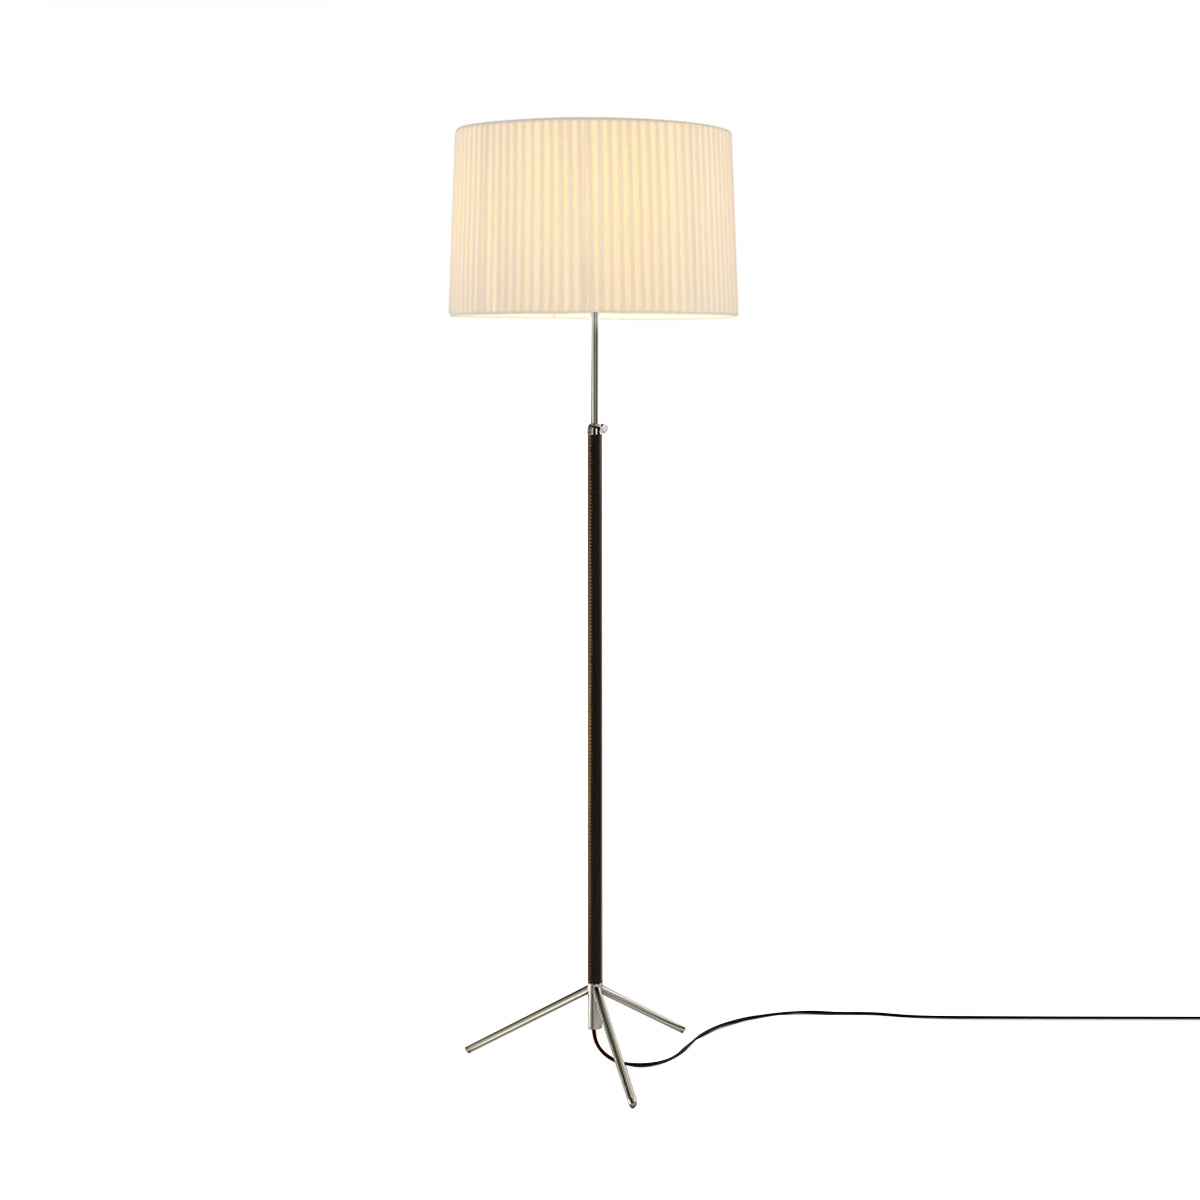 Pie de Salón Floor Lamp: G2 + Chrome-Plated + Natural